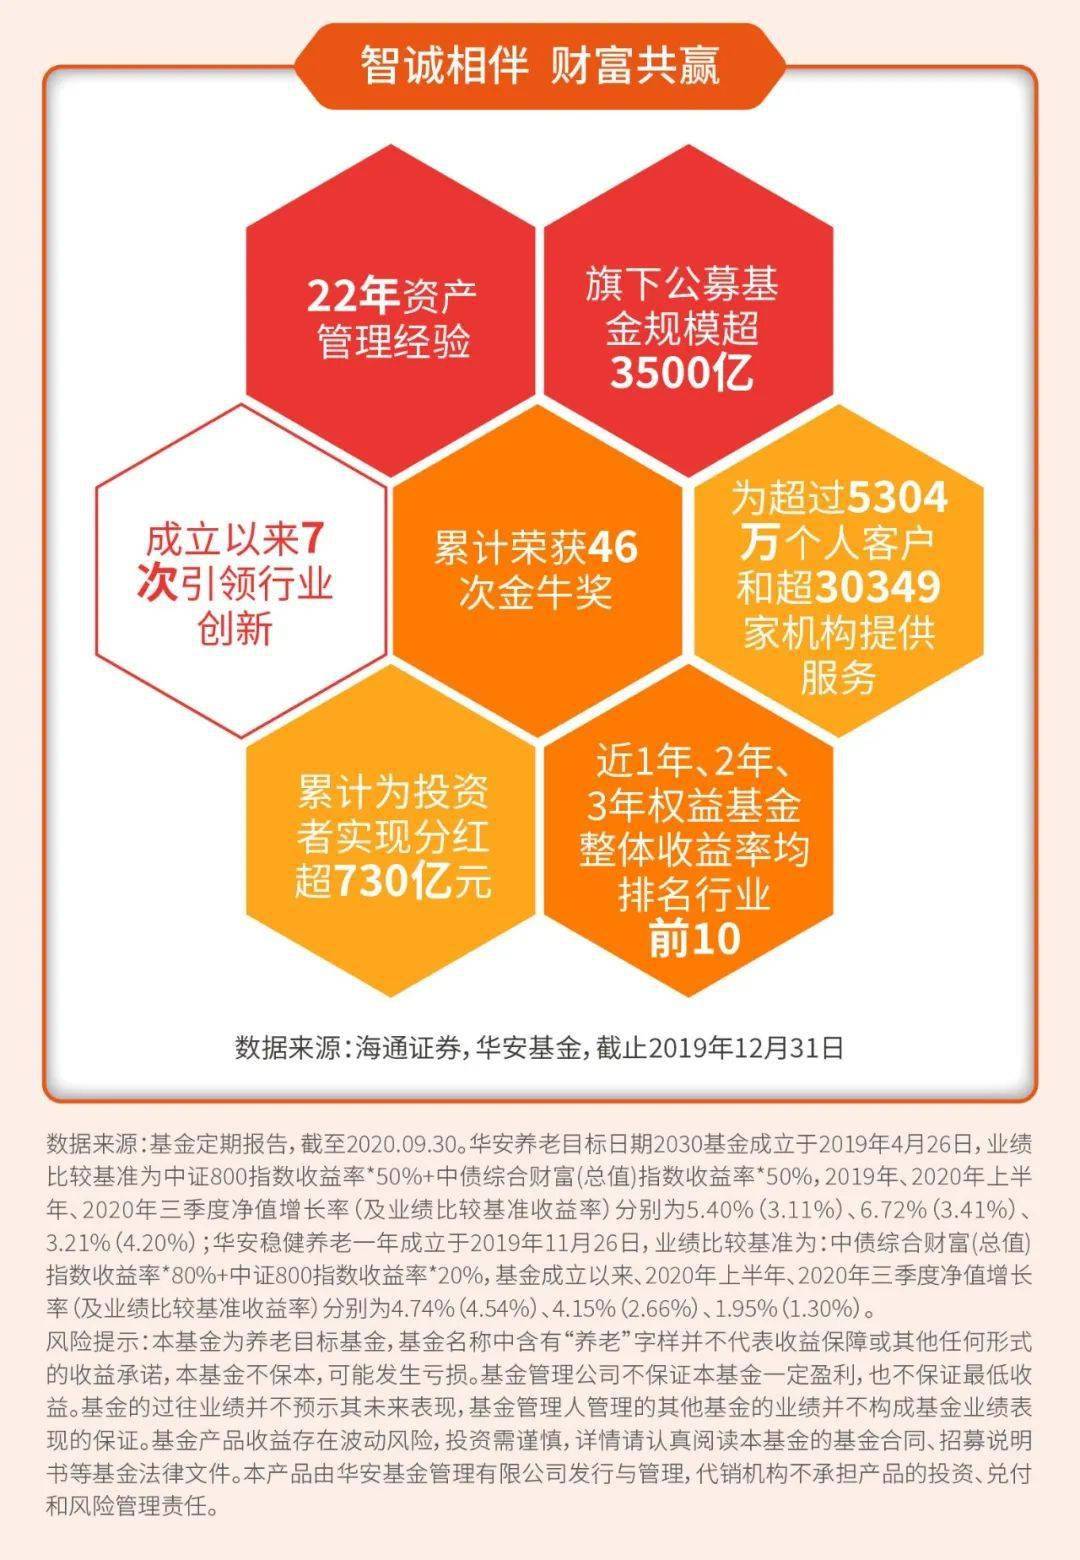 深圳 5G 手机券优惠活动：科技发展的福利与未来影响解析  第6张